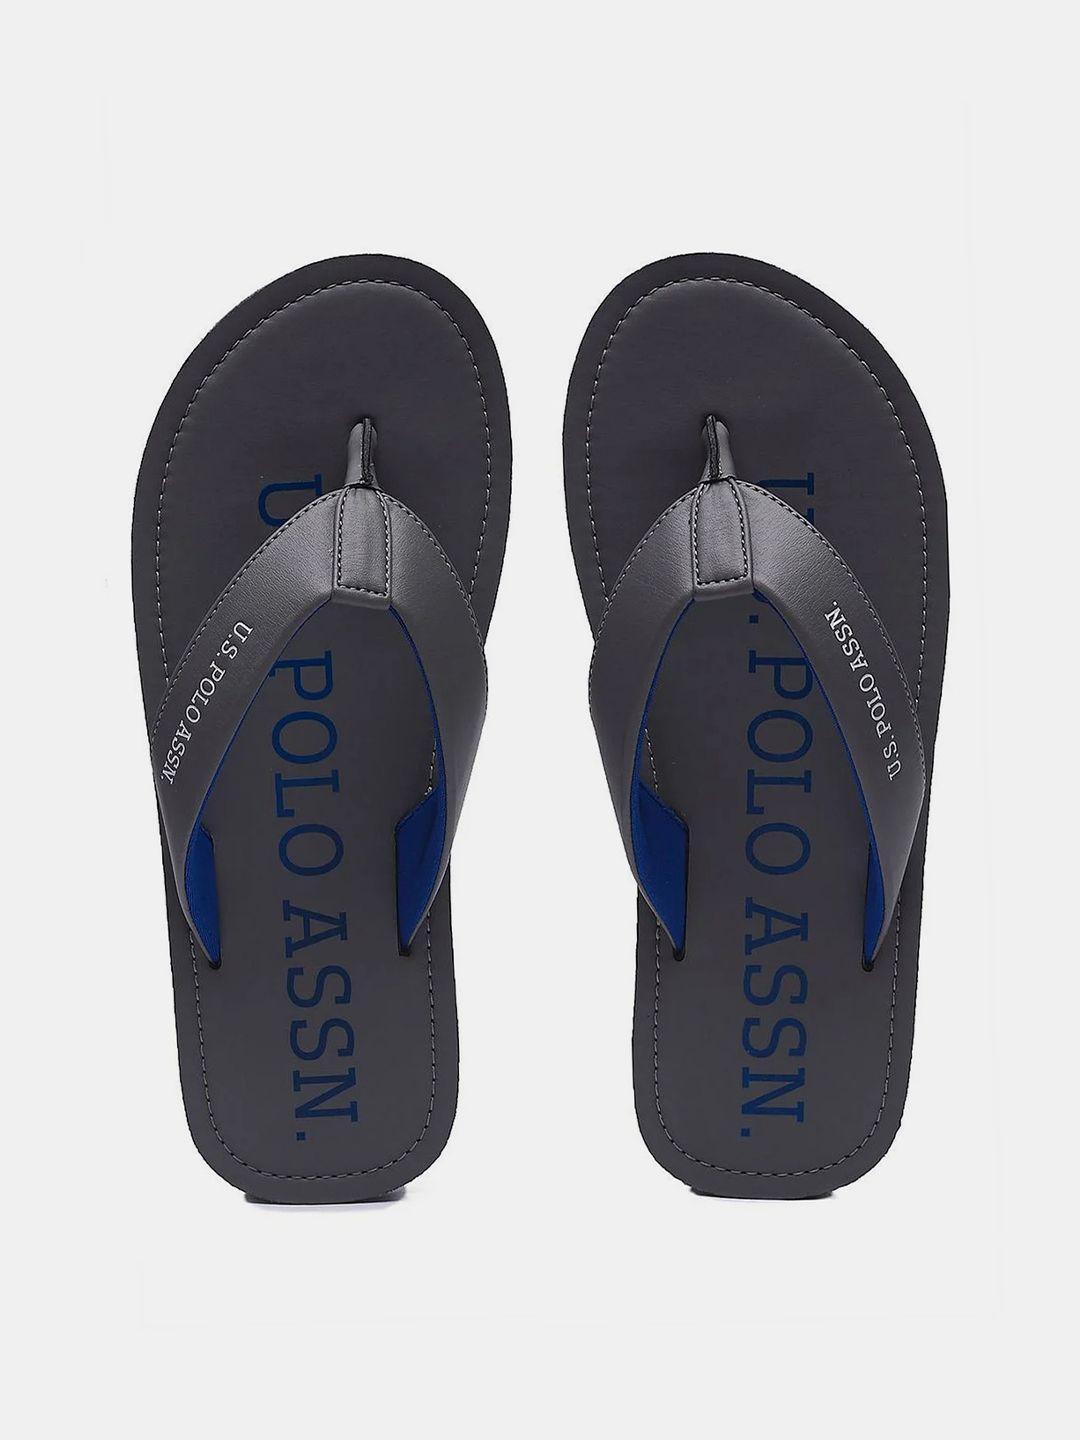 U S Polo Assn Men Grey & Blue PU Comfort Sandals